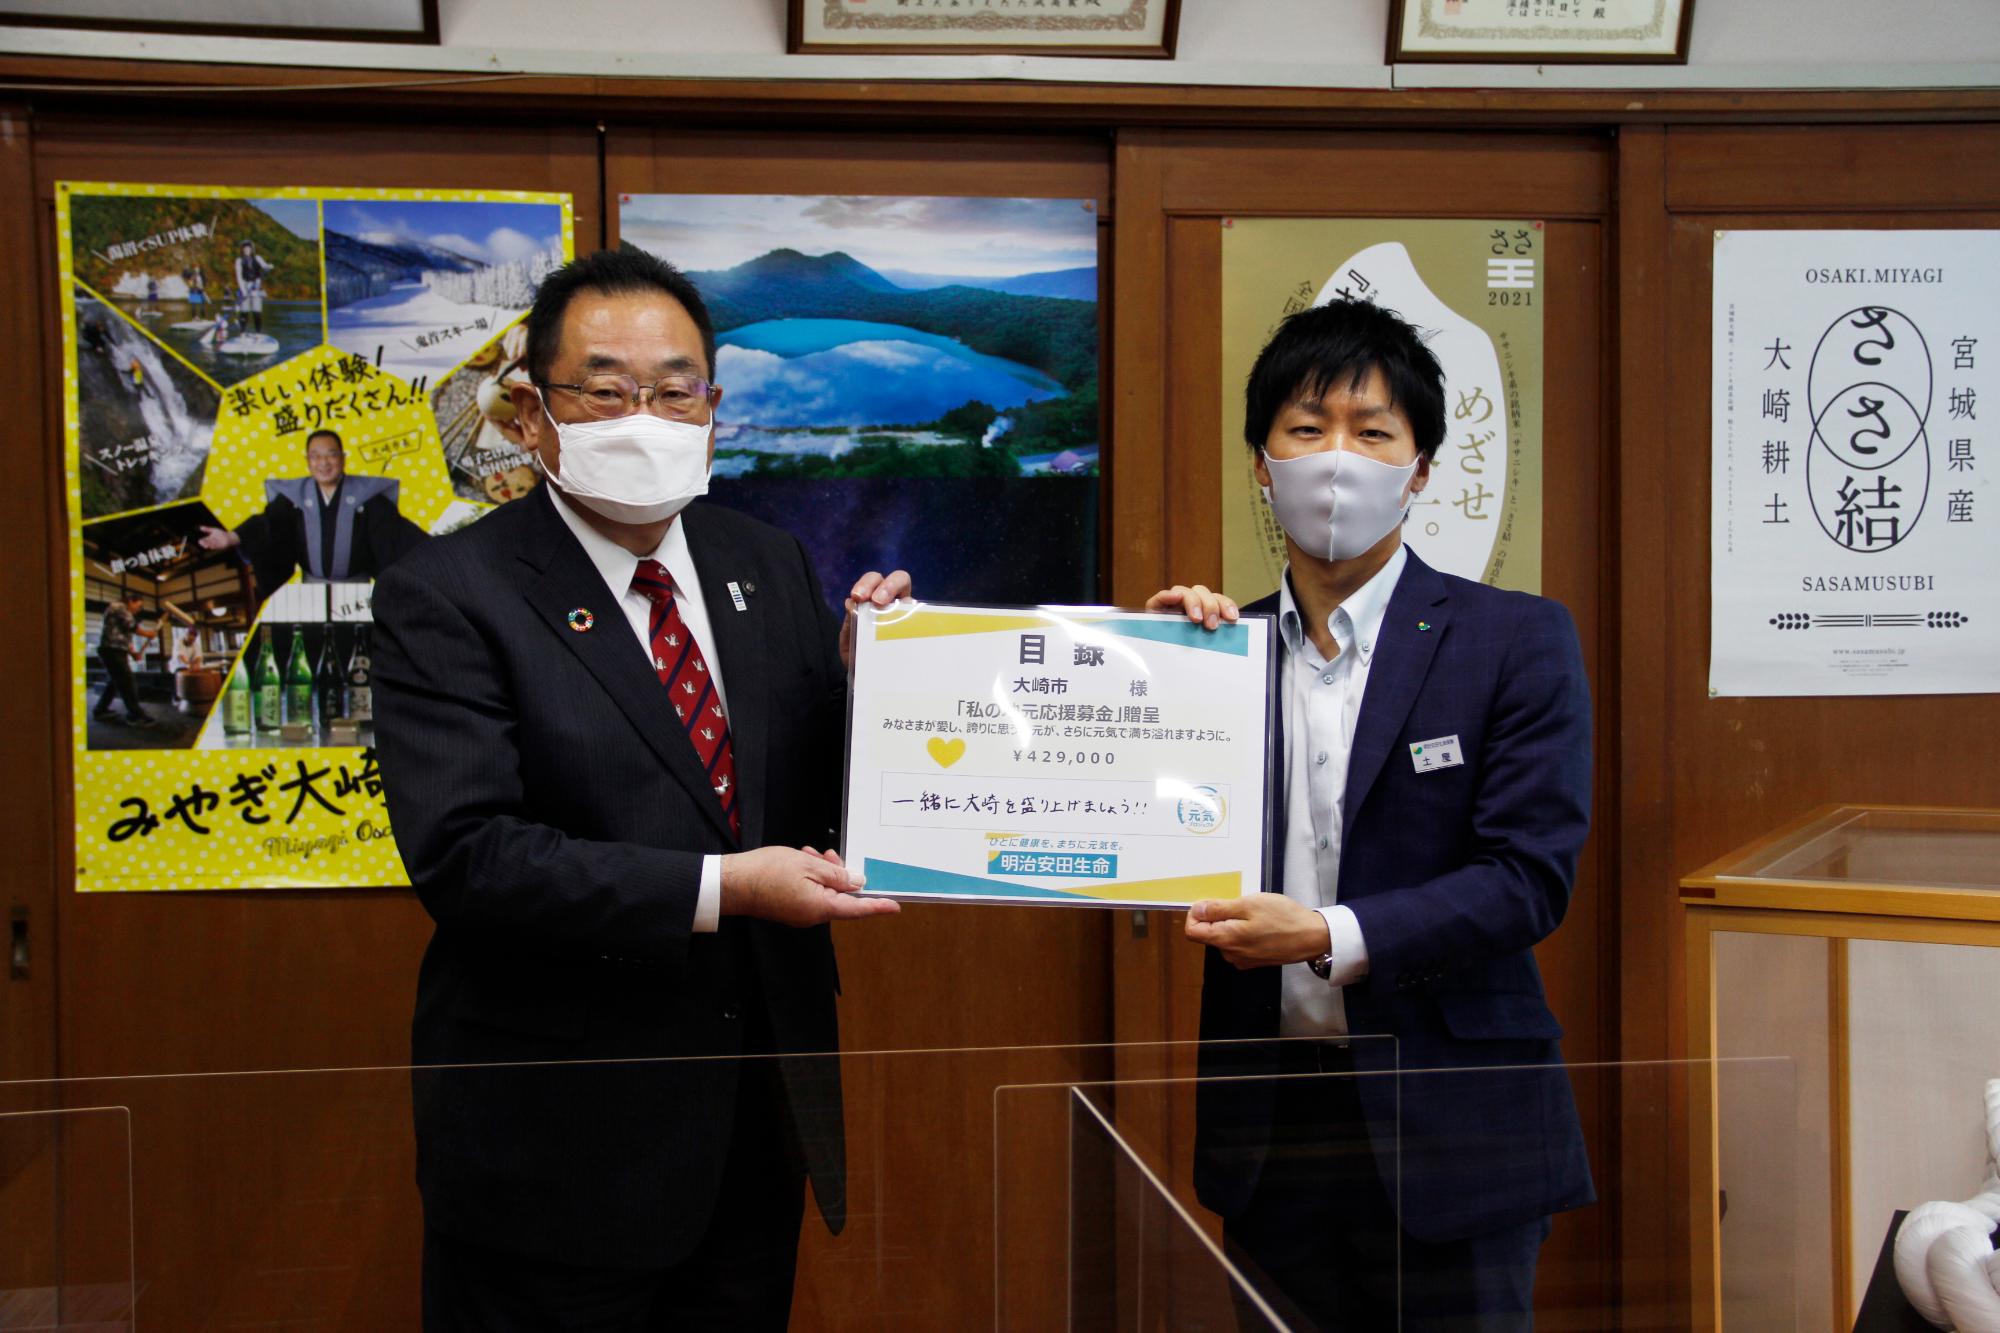 令和3年10月日 明治安田生命新型コロナウイルス感染症支援金贈呈式を執り行いました 大崎市